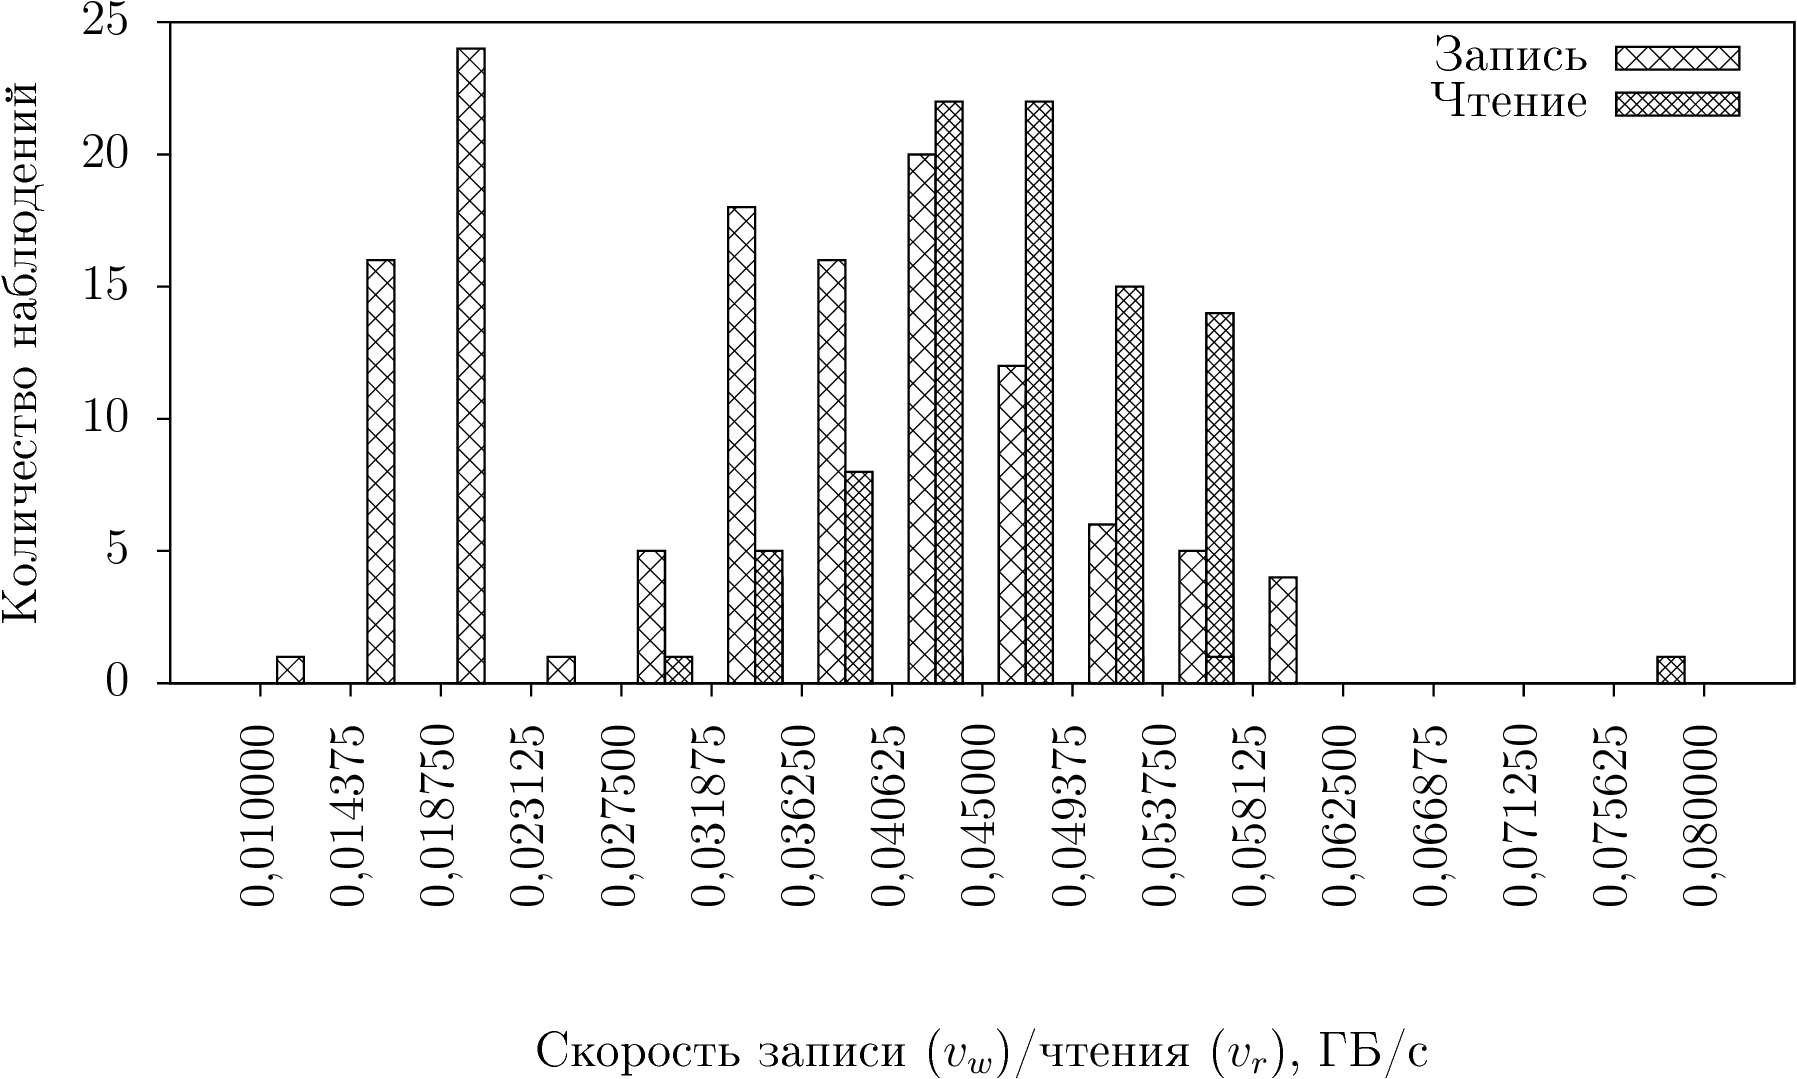 Рисунок 1. Гистограмма распределения частот скоростей записи и чтения